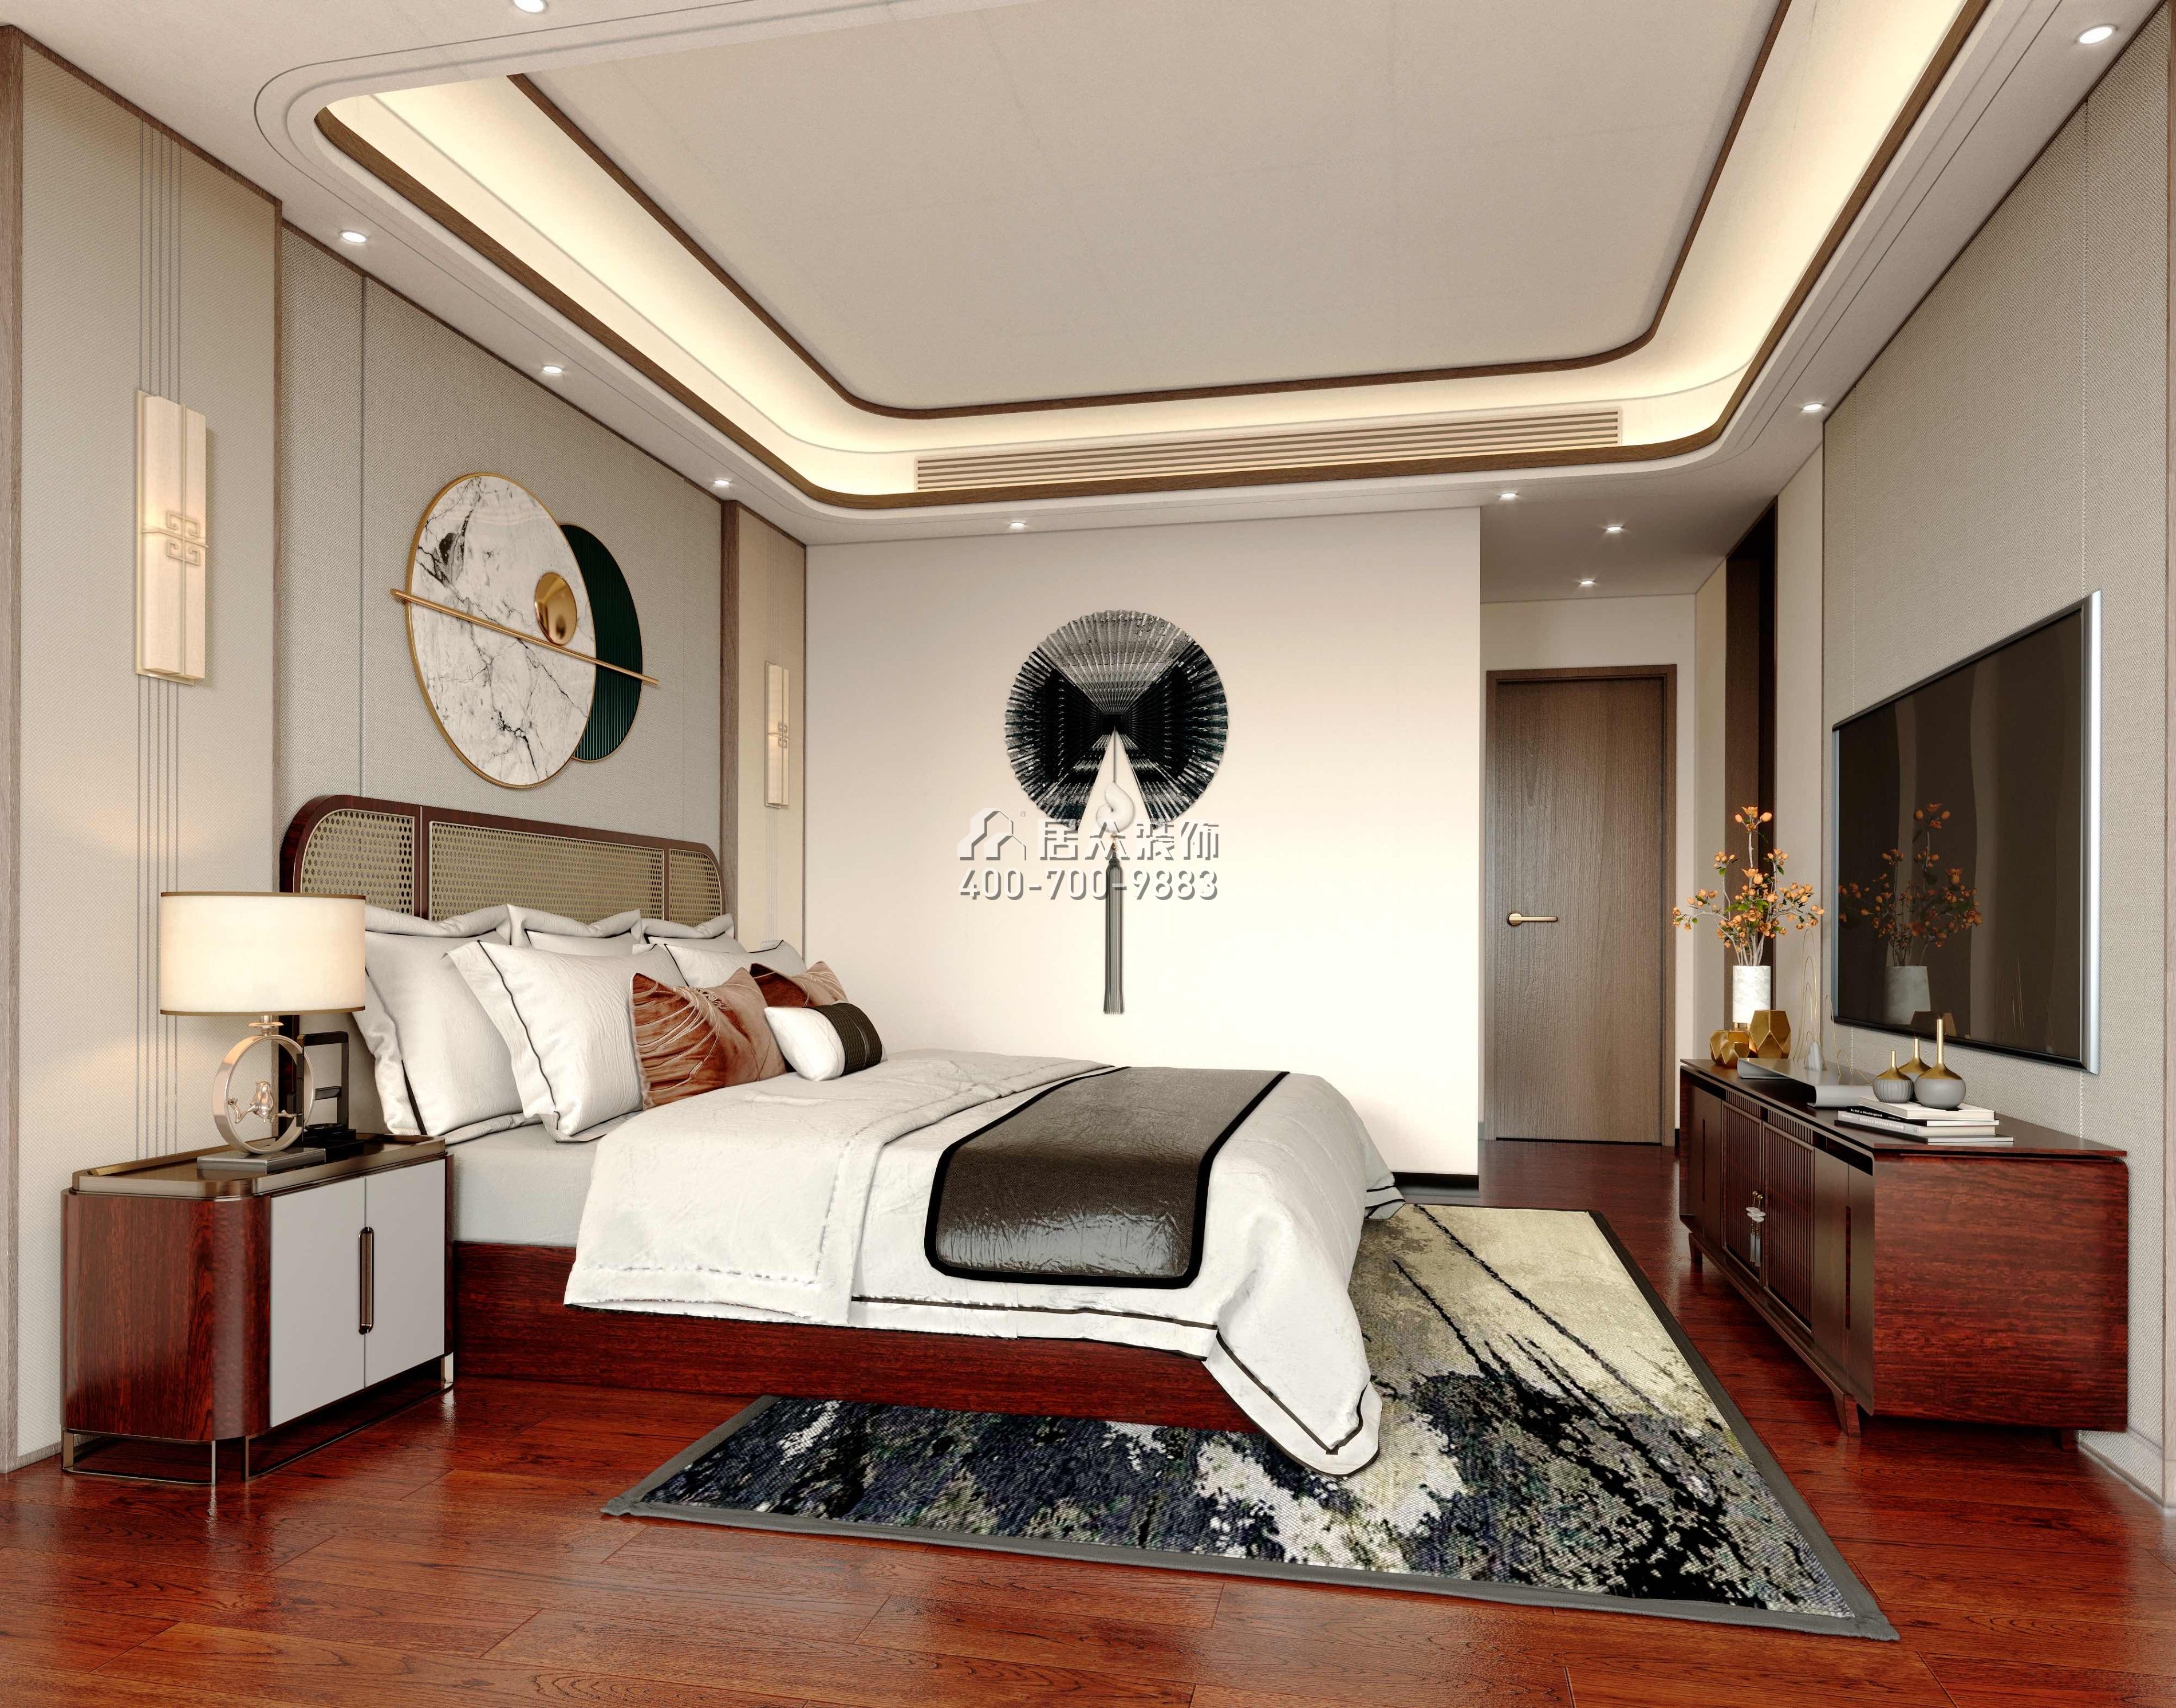 光华园176平方米中式风格平层户型卧室装修效果图